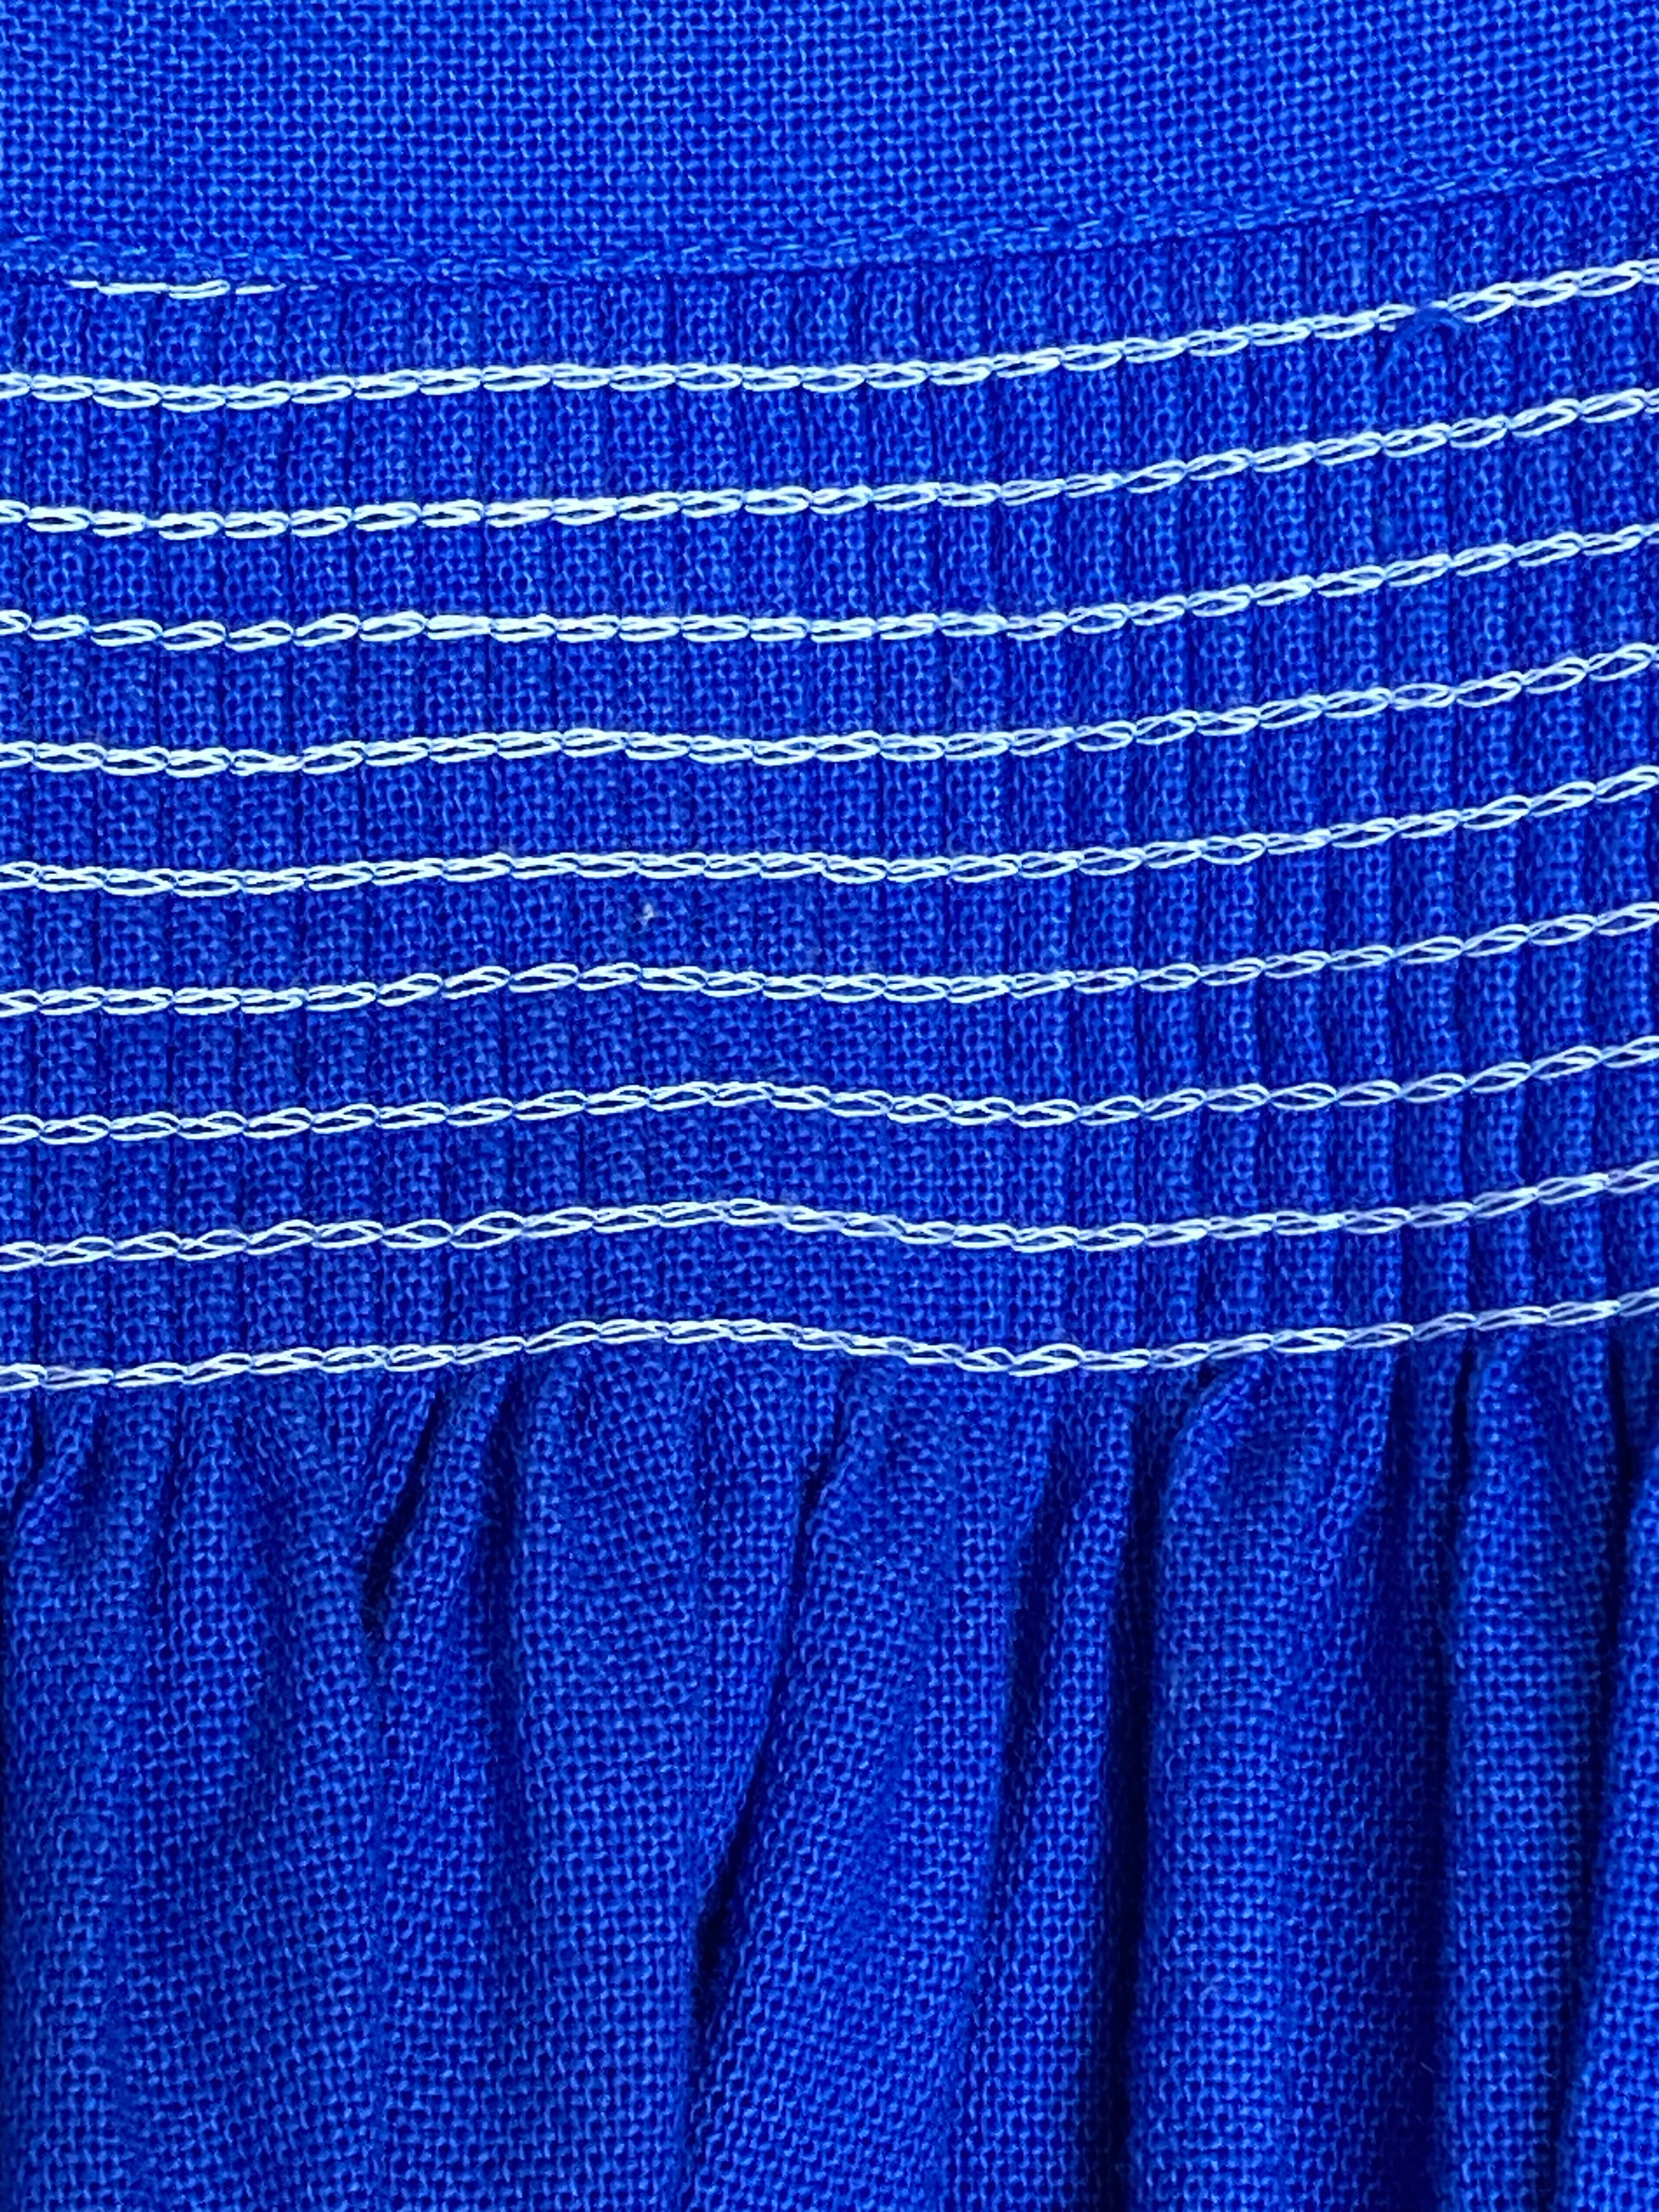 Lange Vintage Dirndlschürze für Dirndl oder Trachtenkleid in blau 77 cm lang